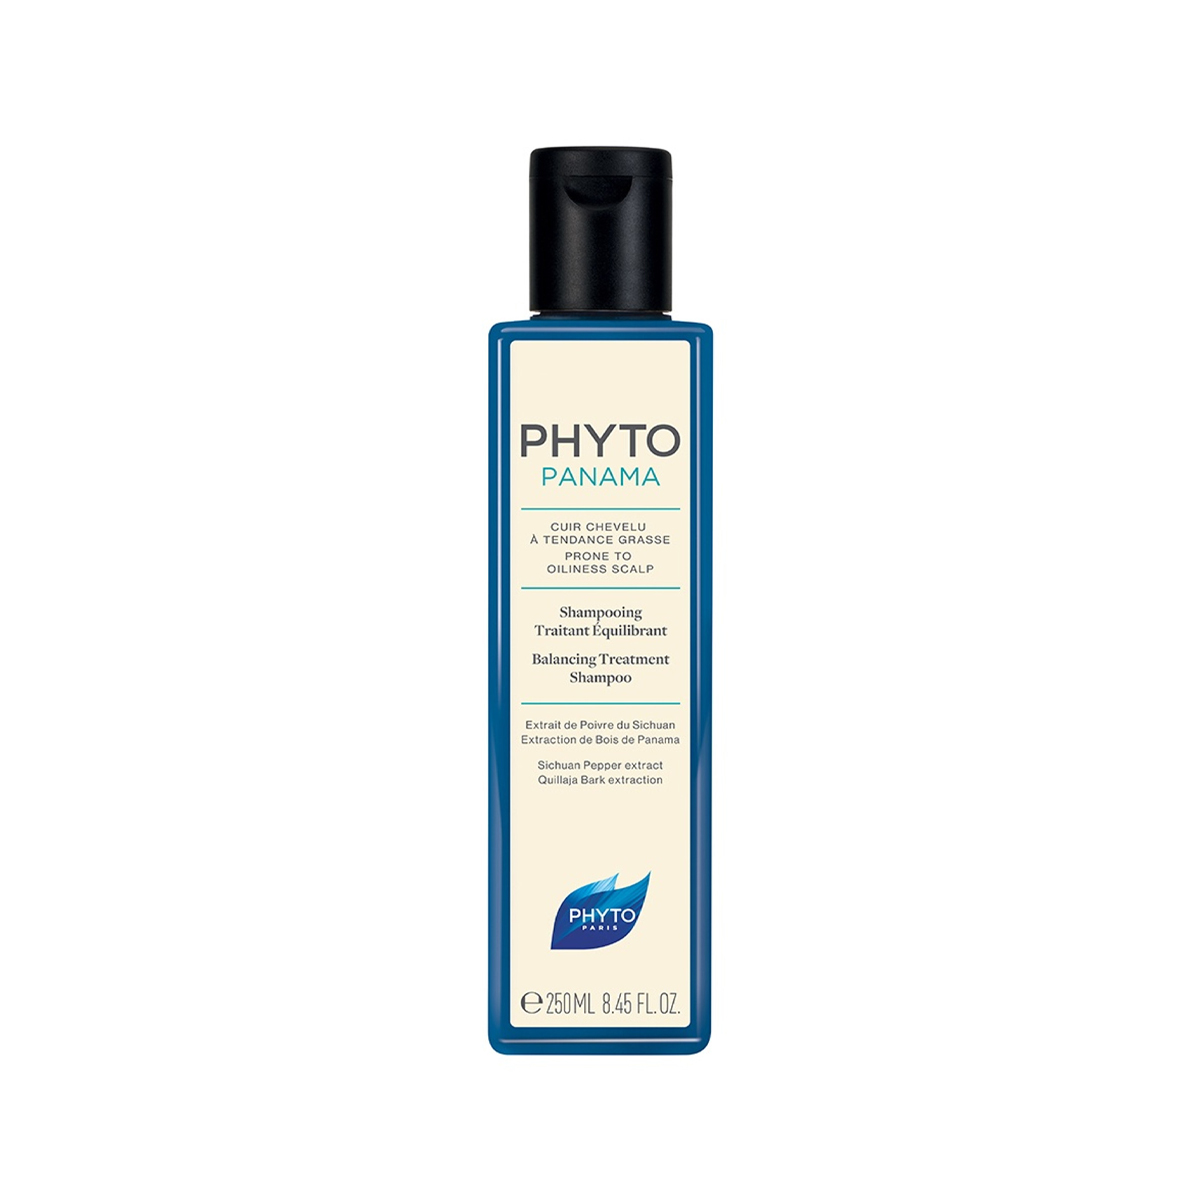 شامپو تنظیم کننده چربی کف سر پاناما~Panama Balancing Treatment Shampoo~PHYTO